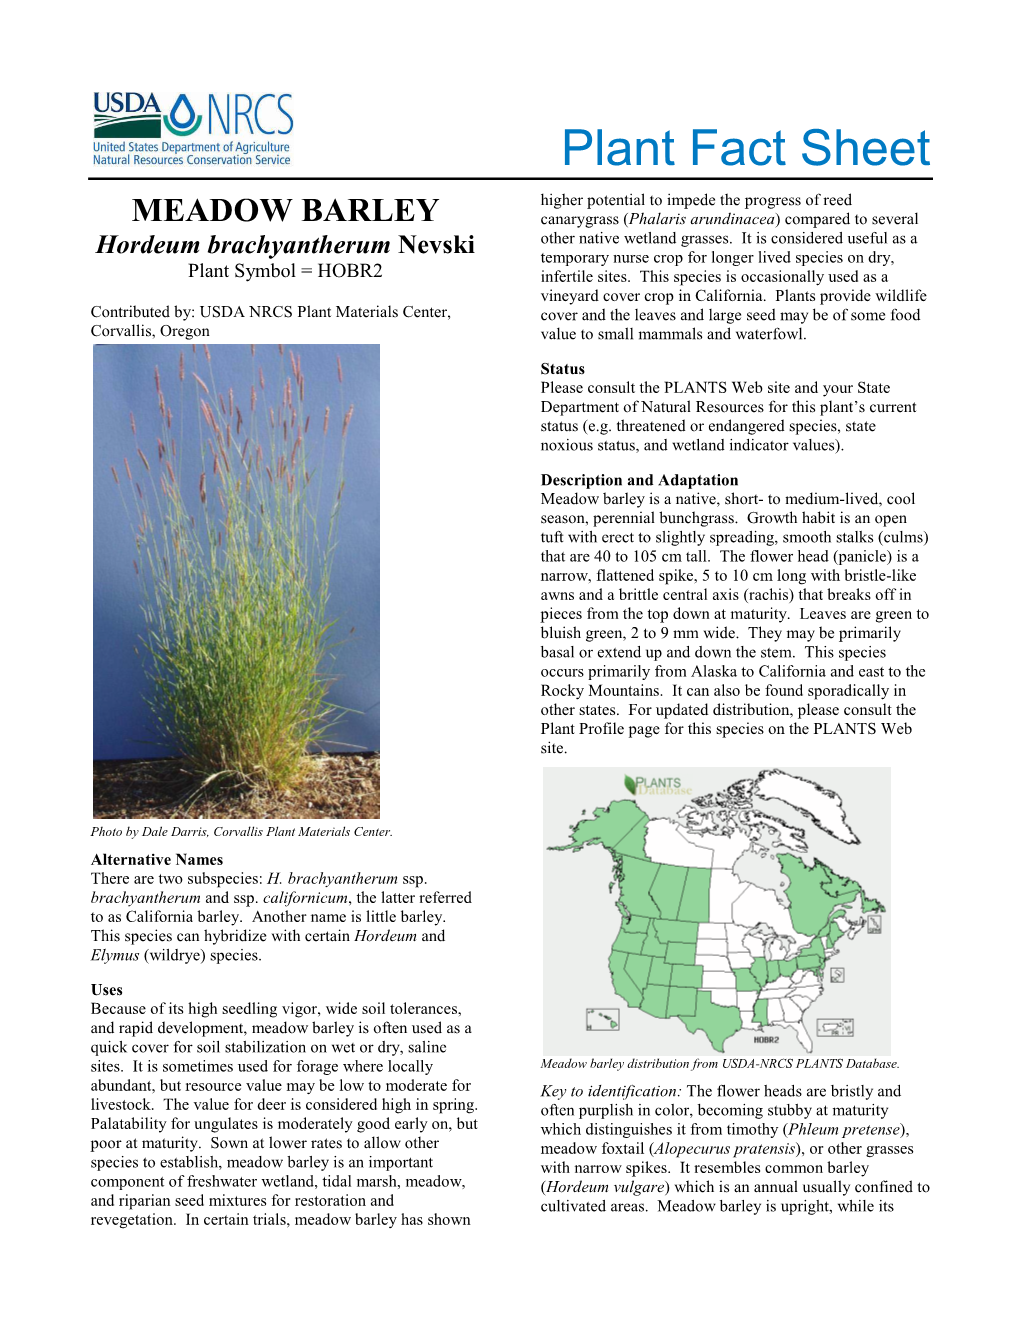 Plant Fact Sheet: Meadow Barley (Hordeum Brachyantherum)